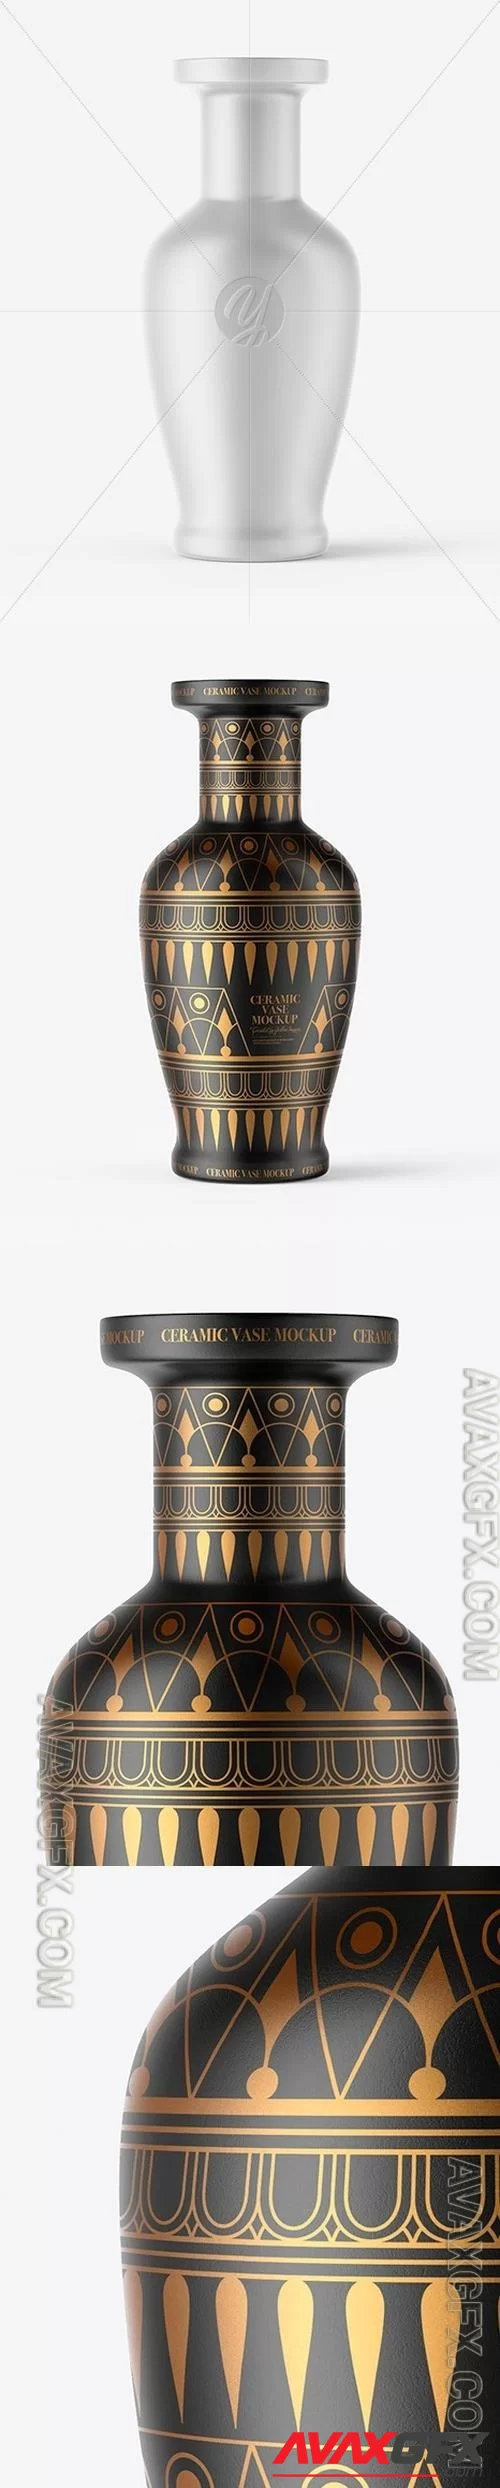 Ceramic Vase Mockup 46972 [TIF]